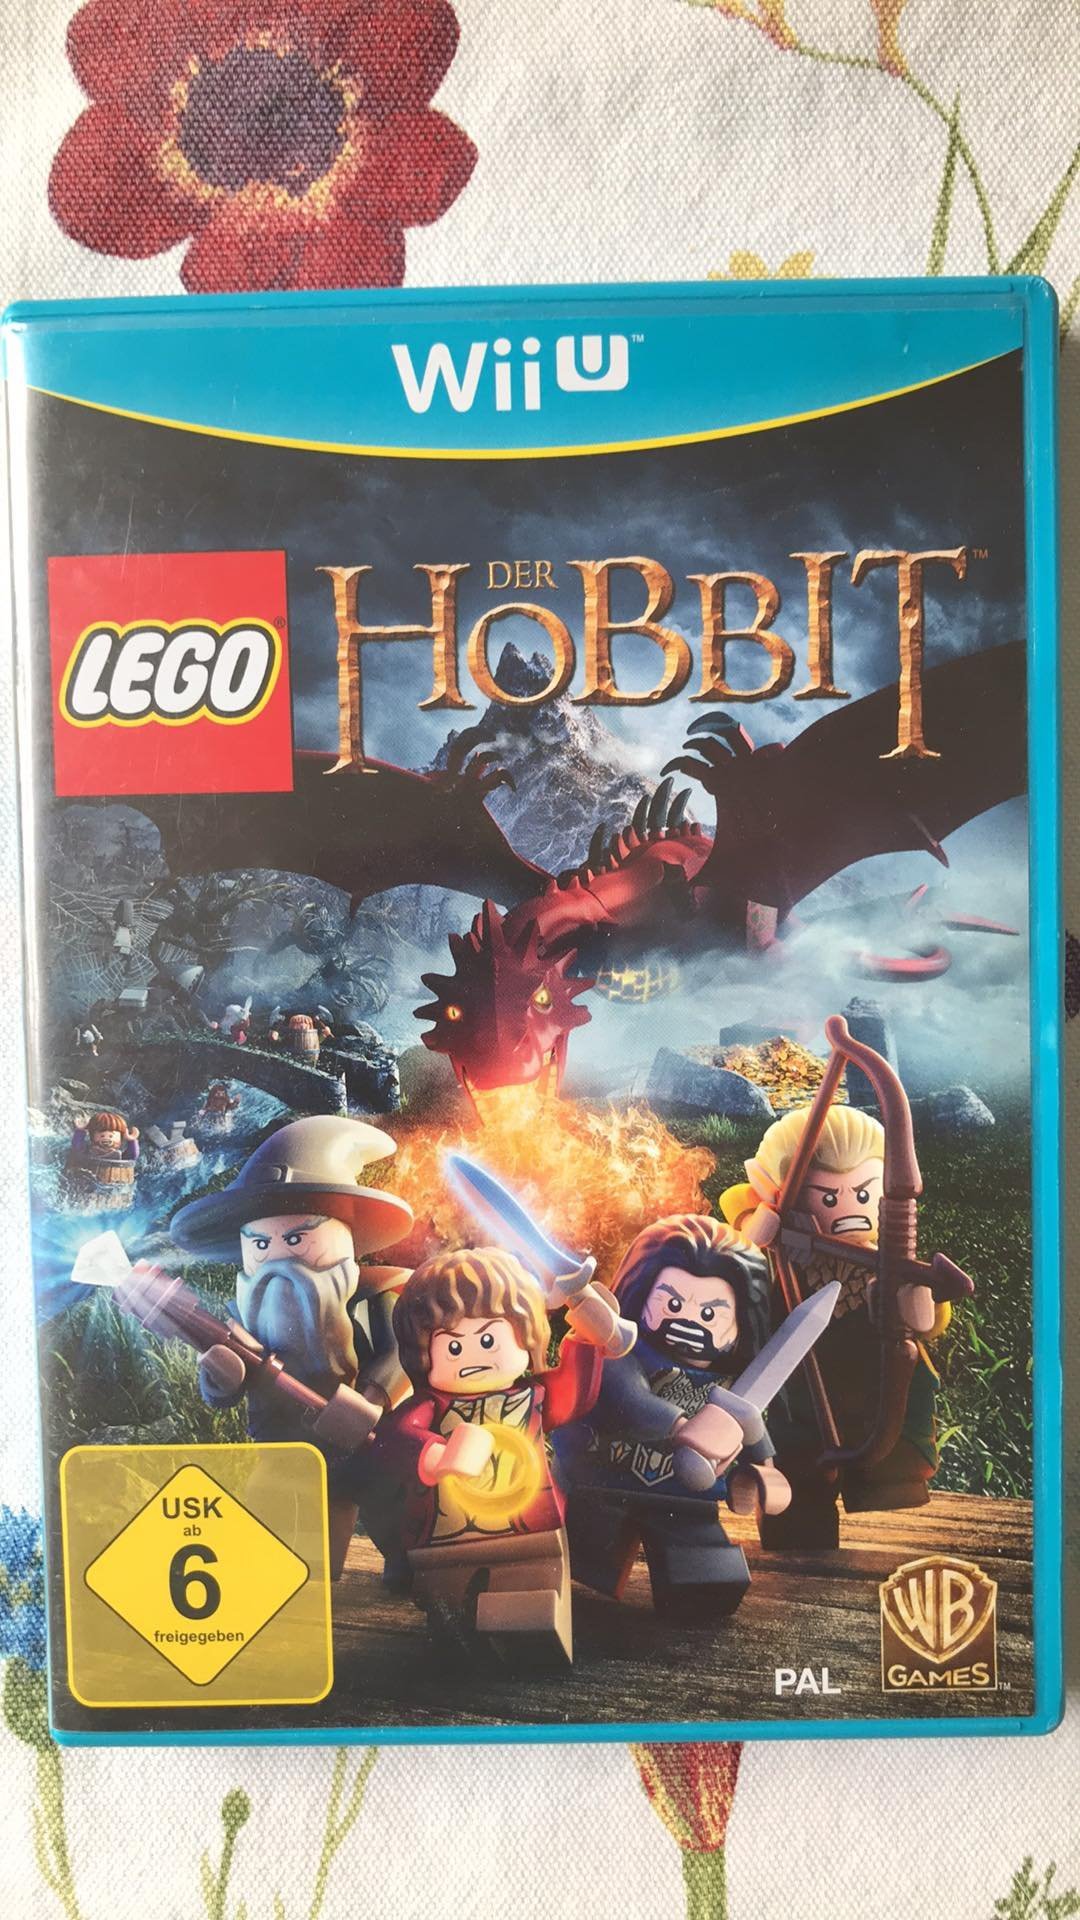 lego hobbit download code wii u